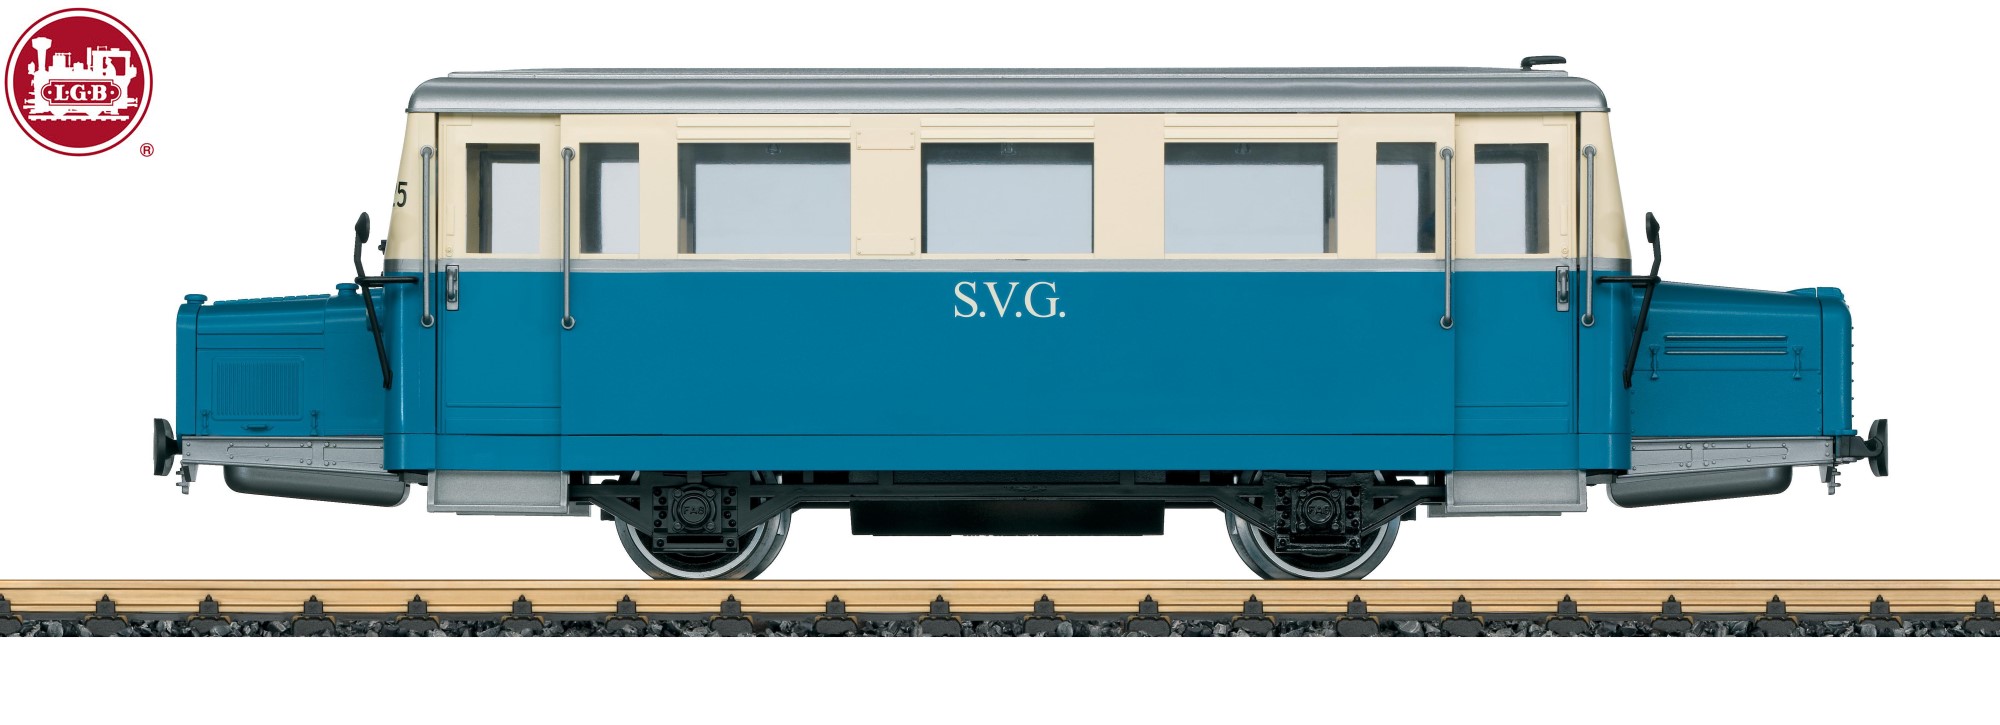 LGB Art. Nr. 24660 - Schienenbus Weimar SVG Epoche III - Auslieferung schon im 1. Quartal 2016